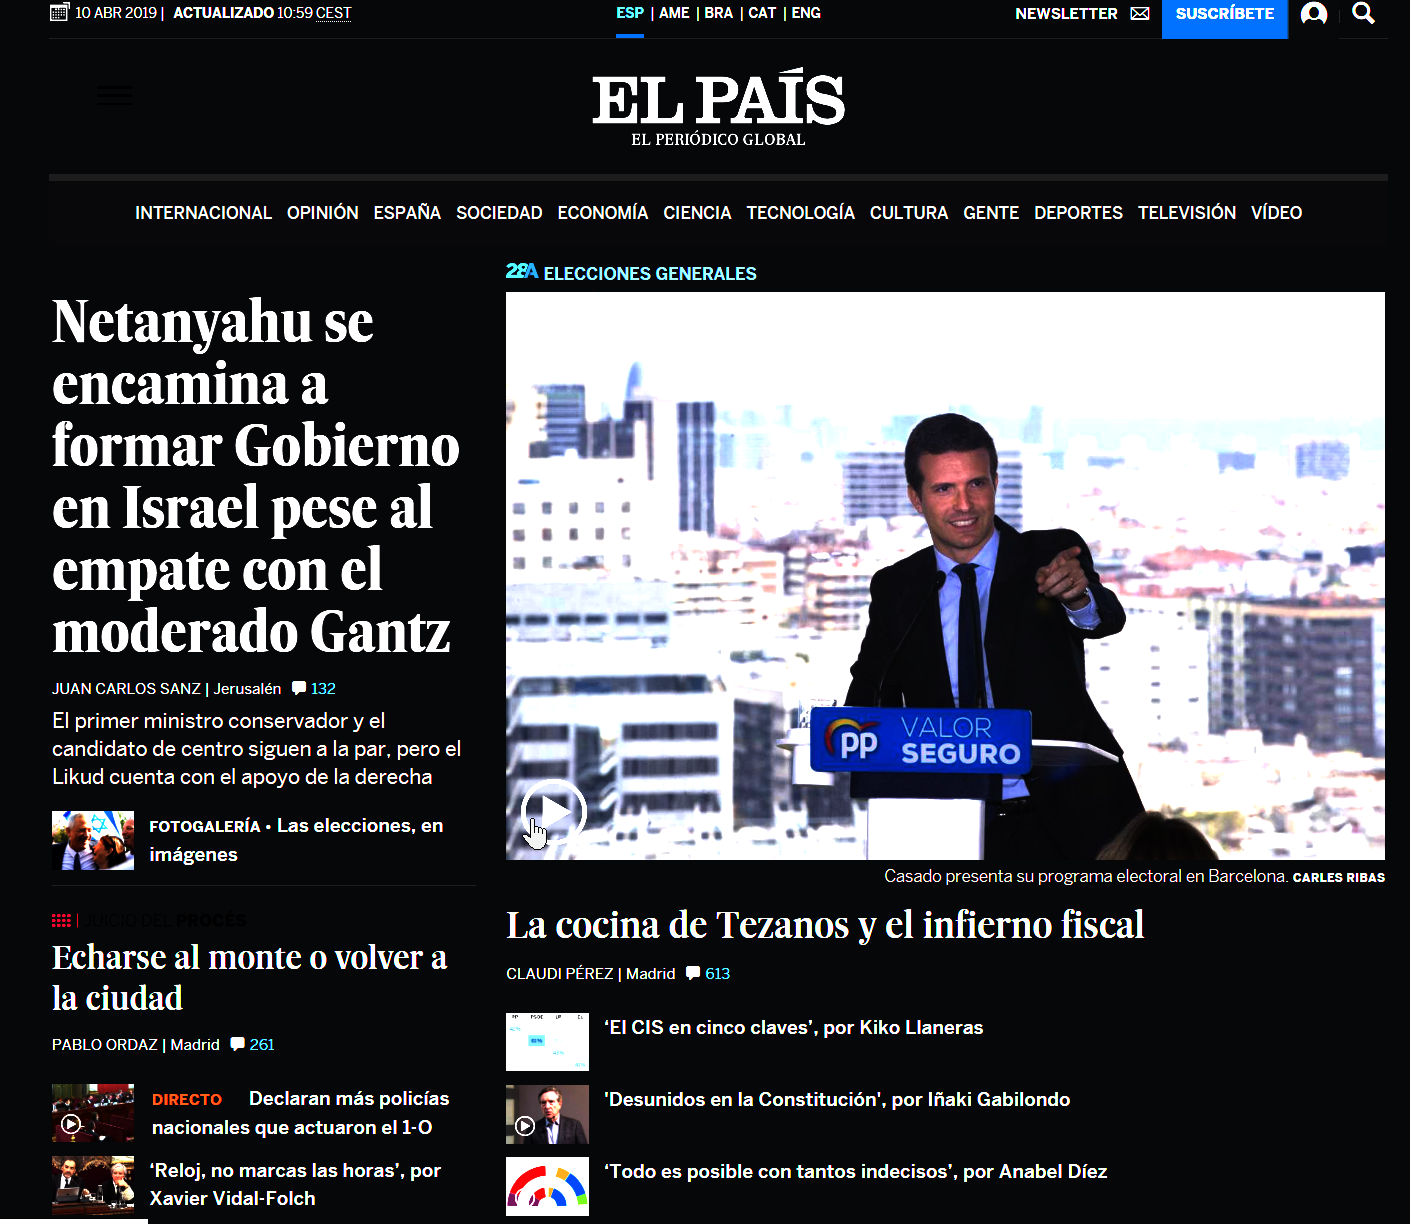 2019-04-10 11_01_31-EL PAÍS_ el periódico global - Opera.png